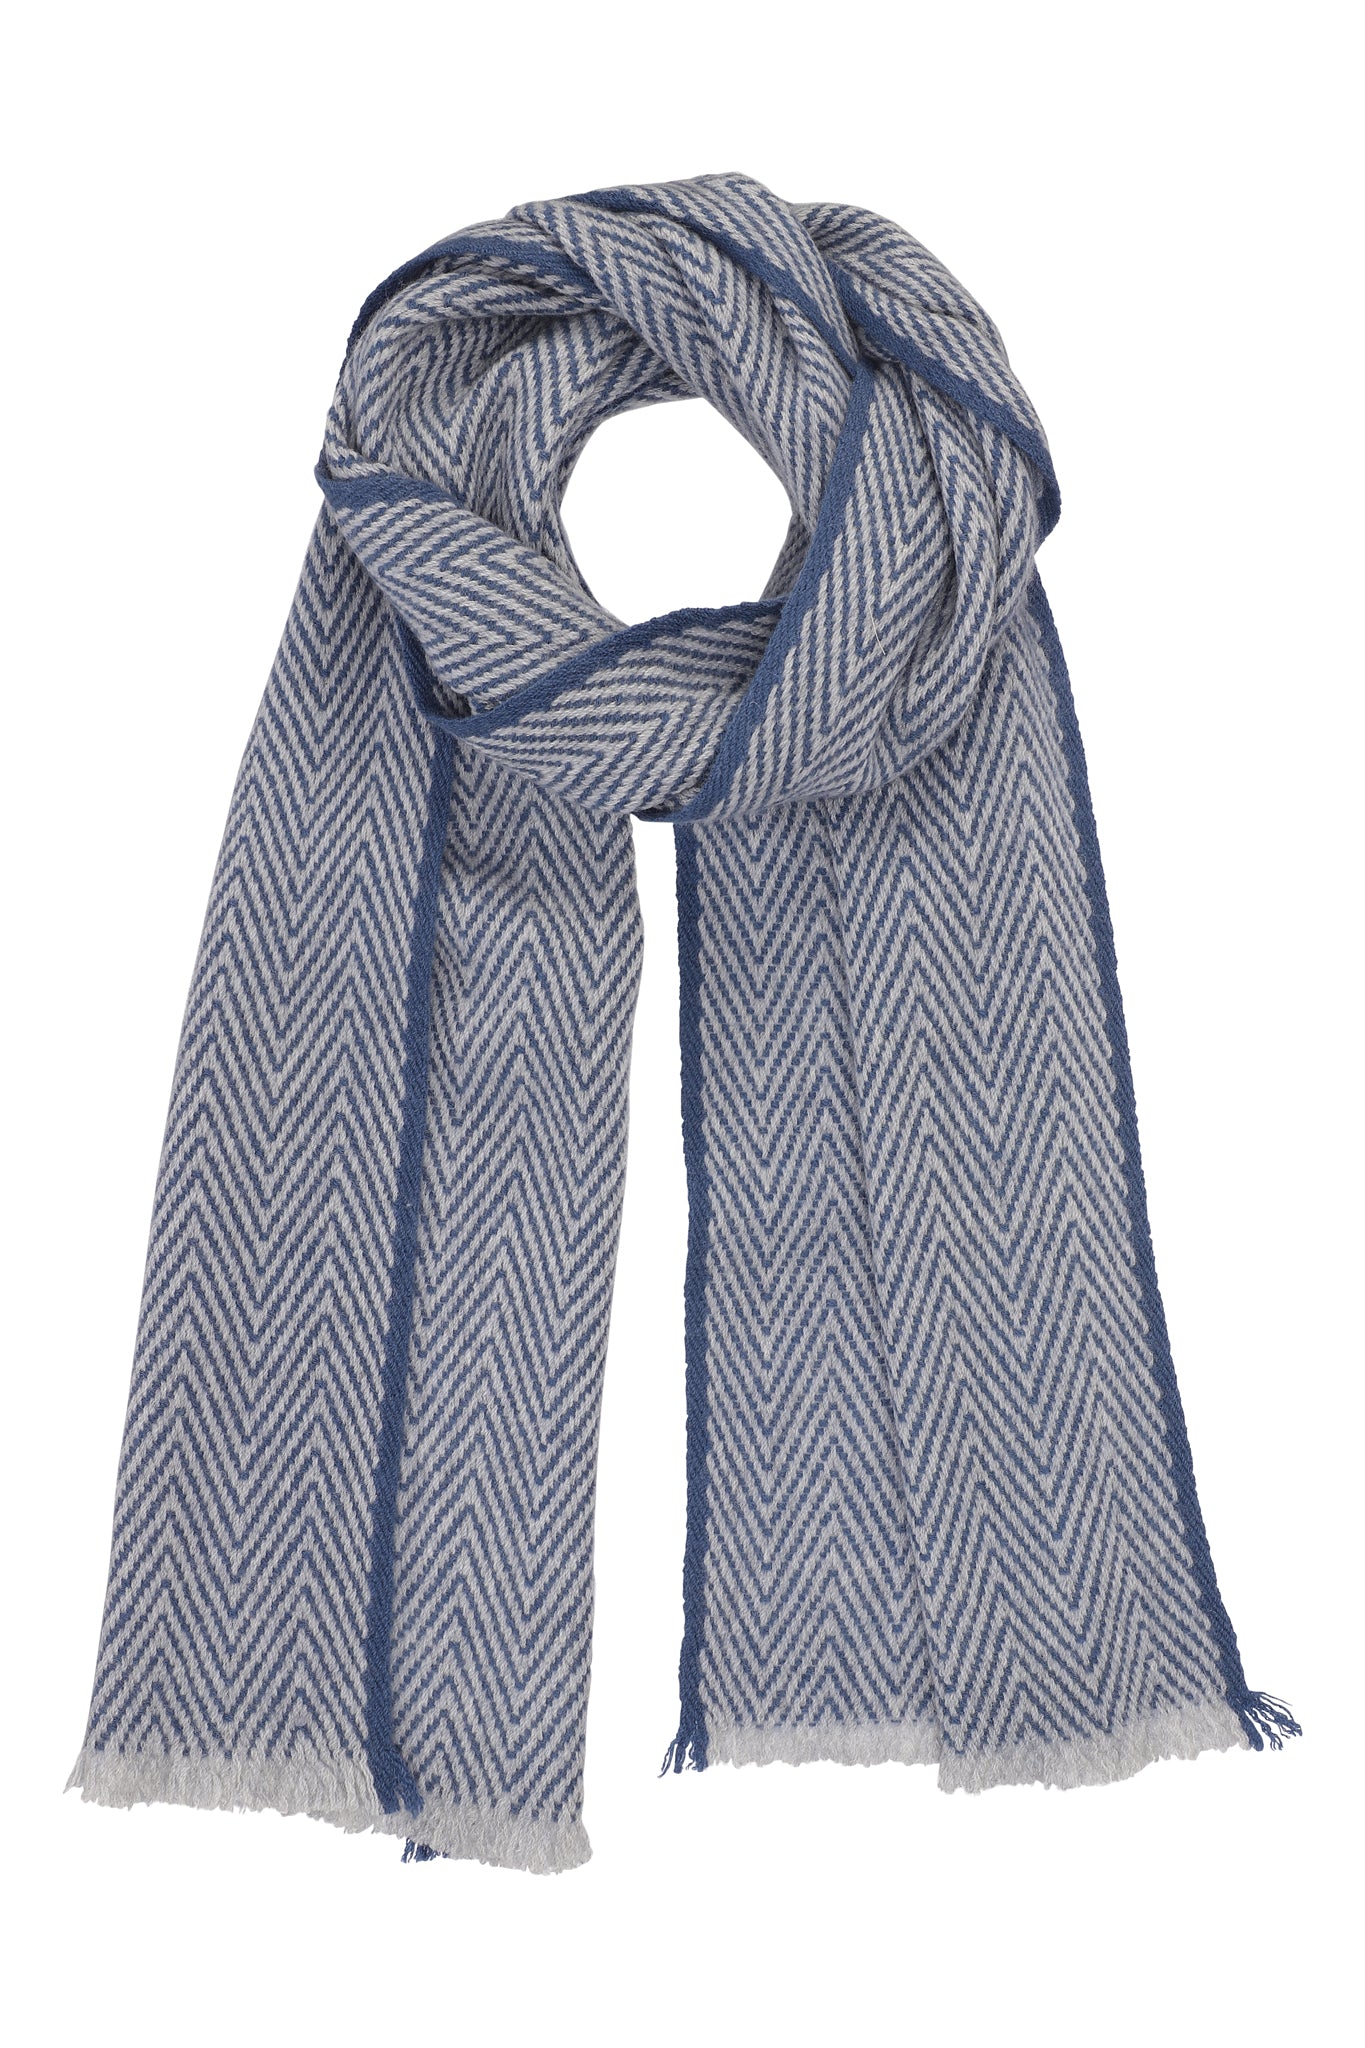 Halstørklæde sildebensmønster i 100% ren cashmere - Blå og Hvid